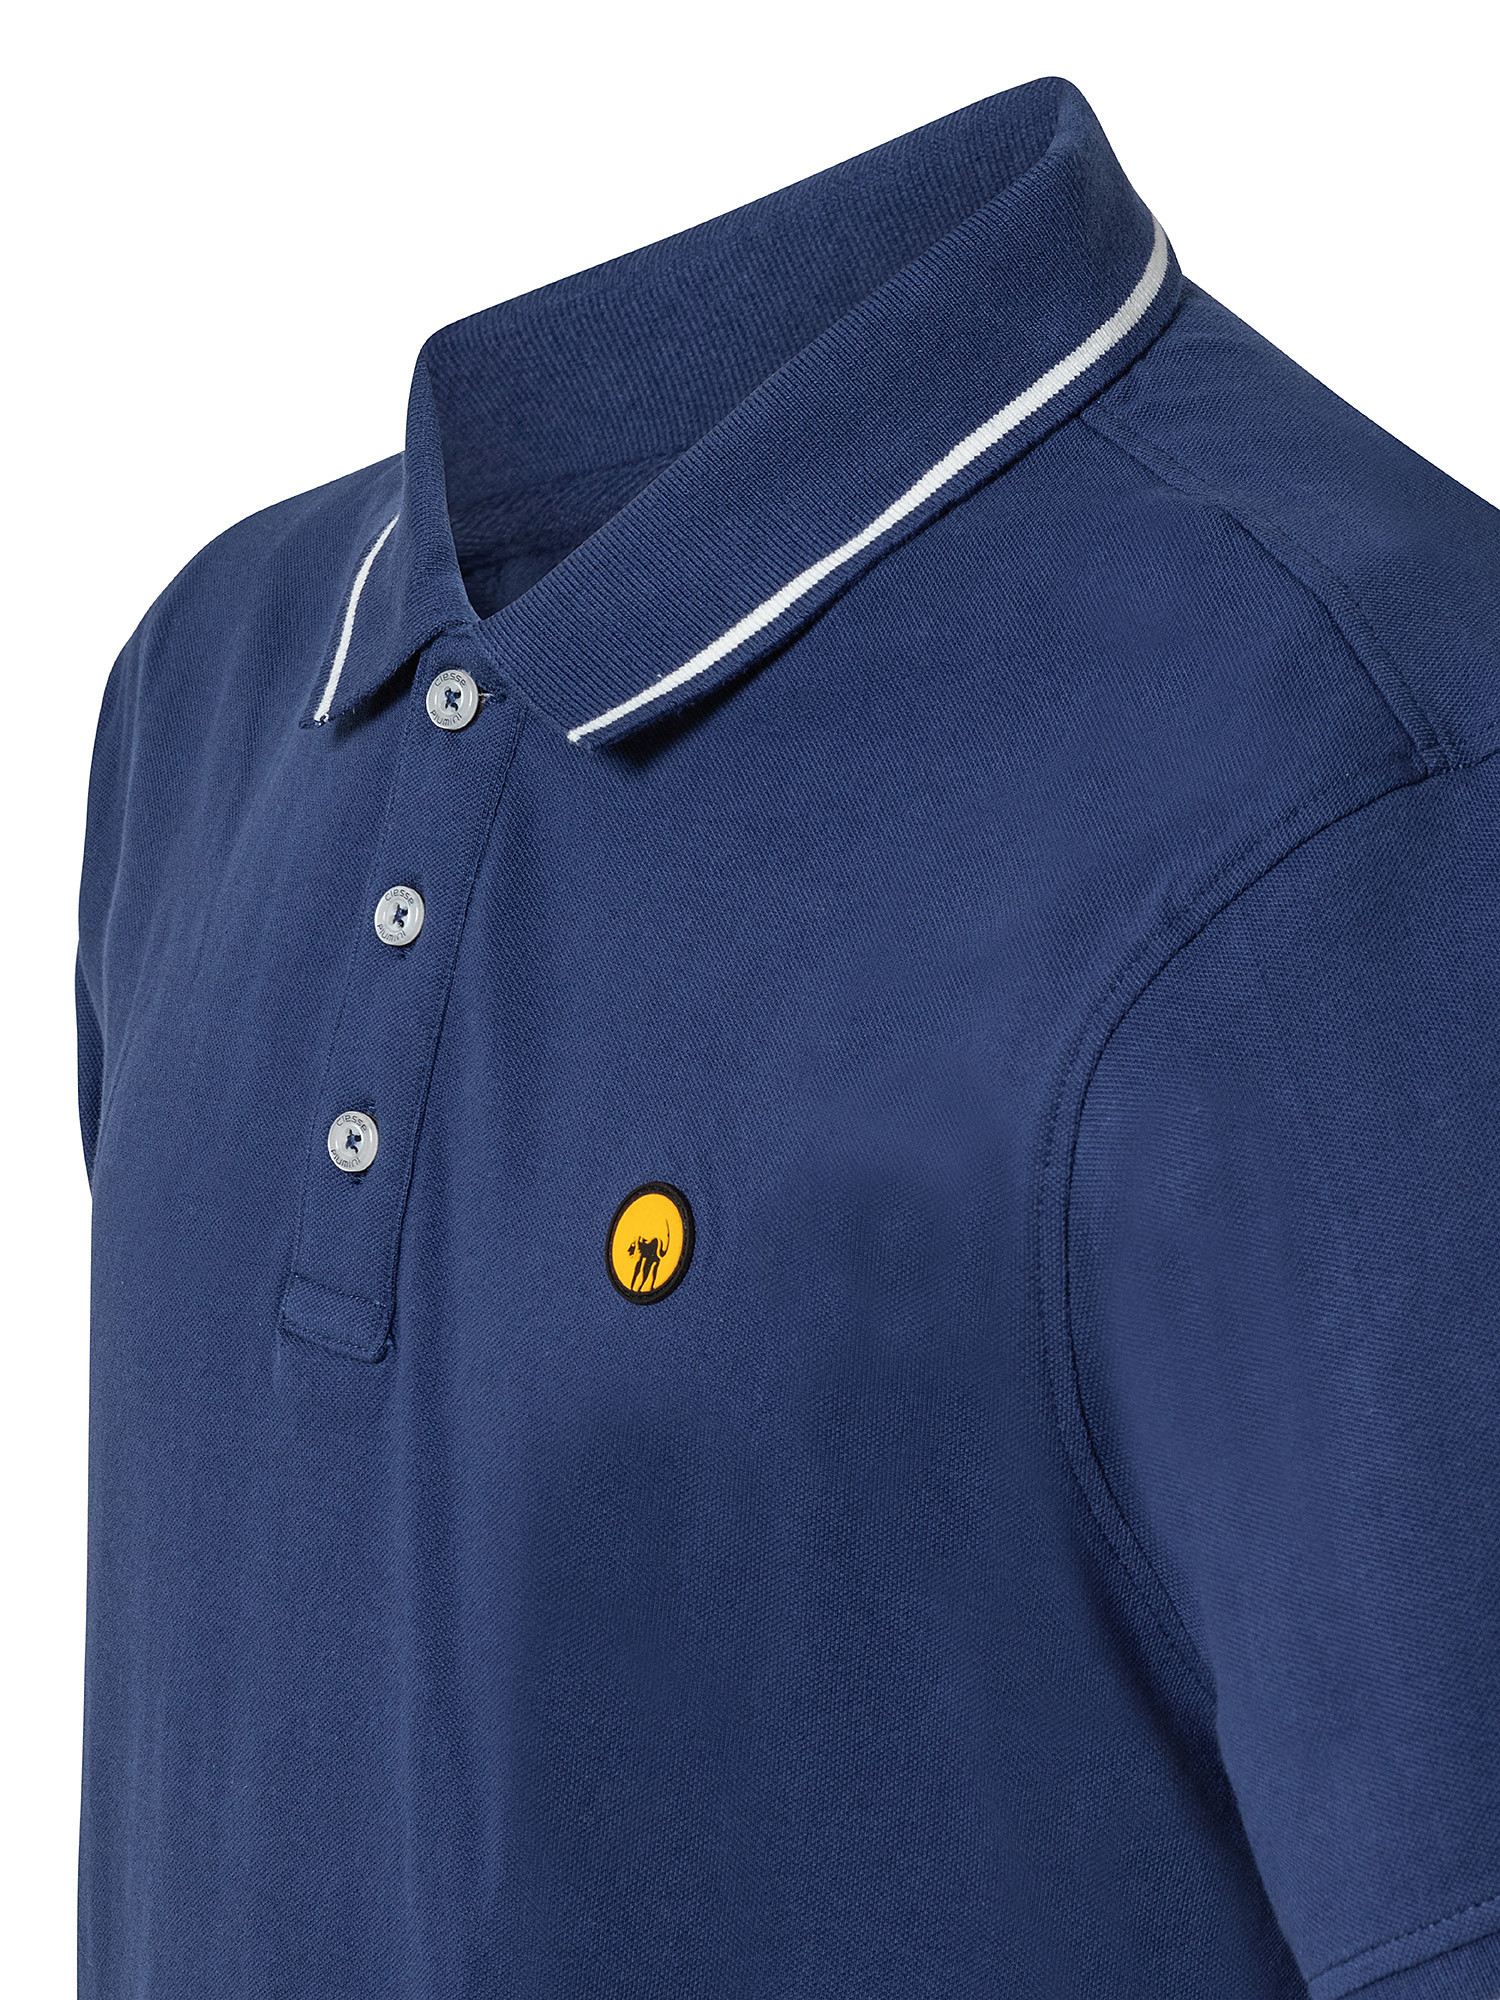 Polo shirt, Blue, large image number 2